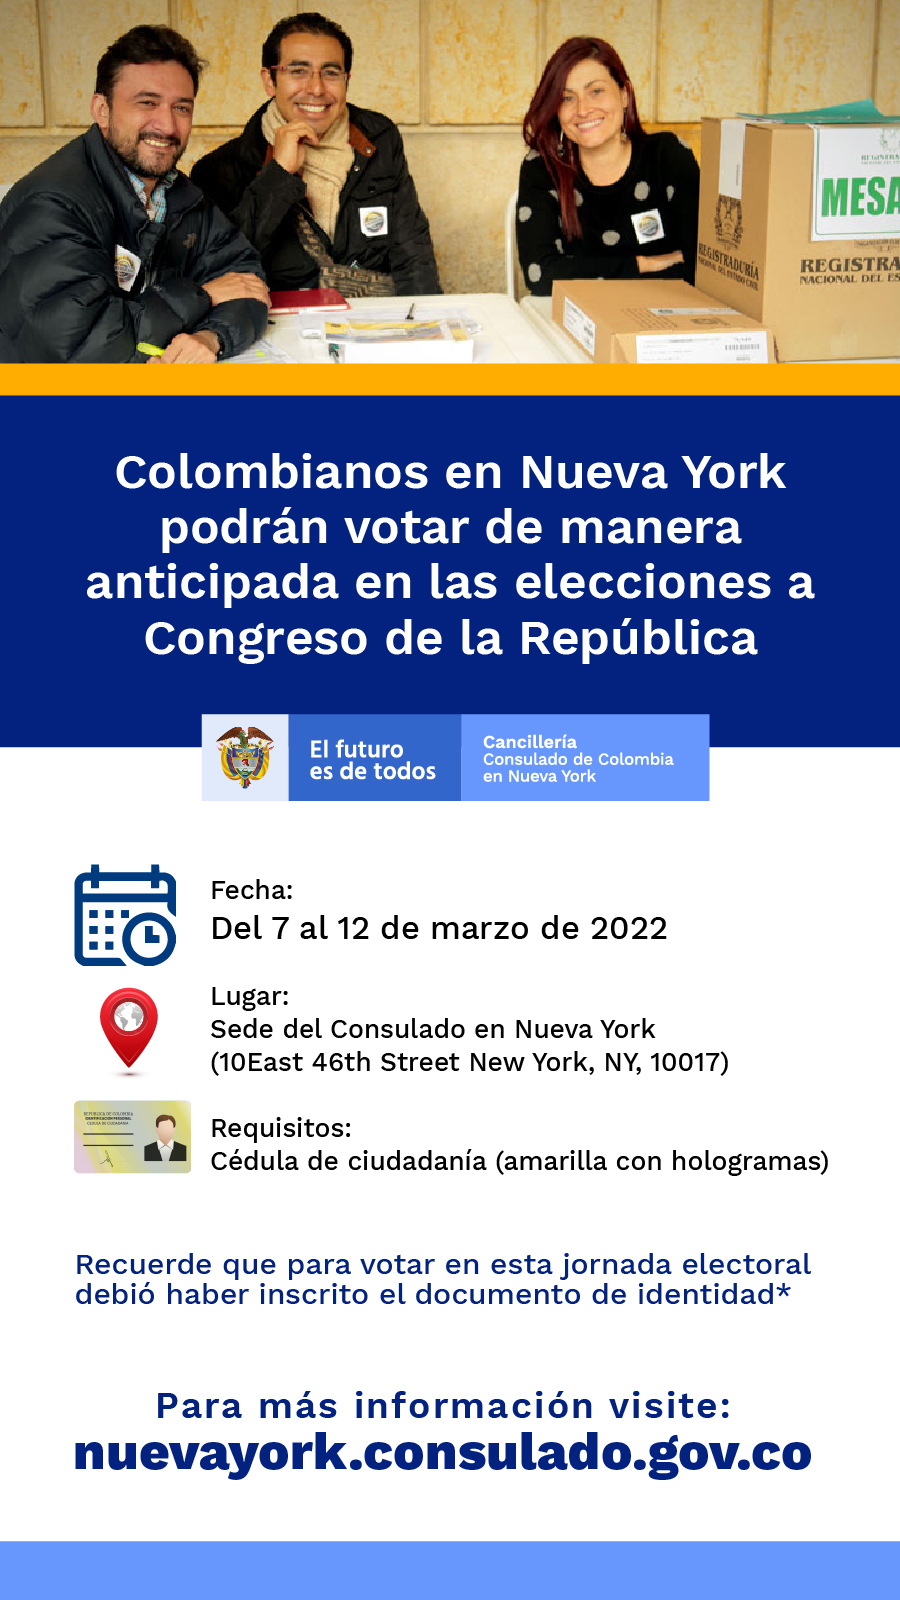 Colombianos en Nueva York podrán votas de manera anticipada en las elecciones a Congreso de la República